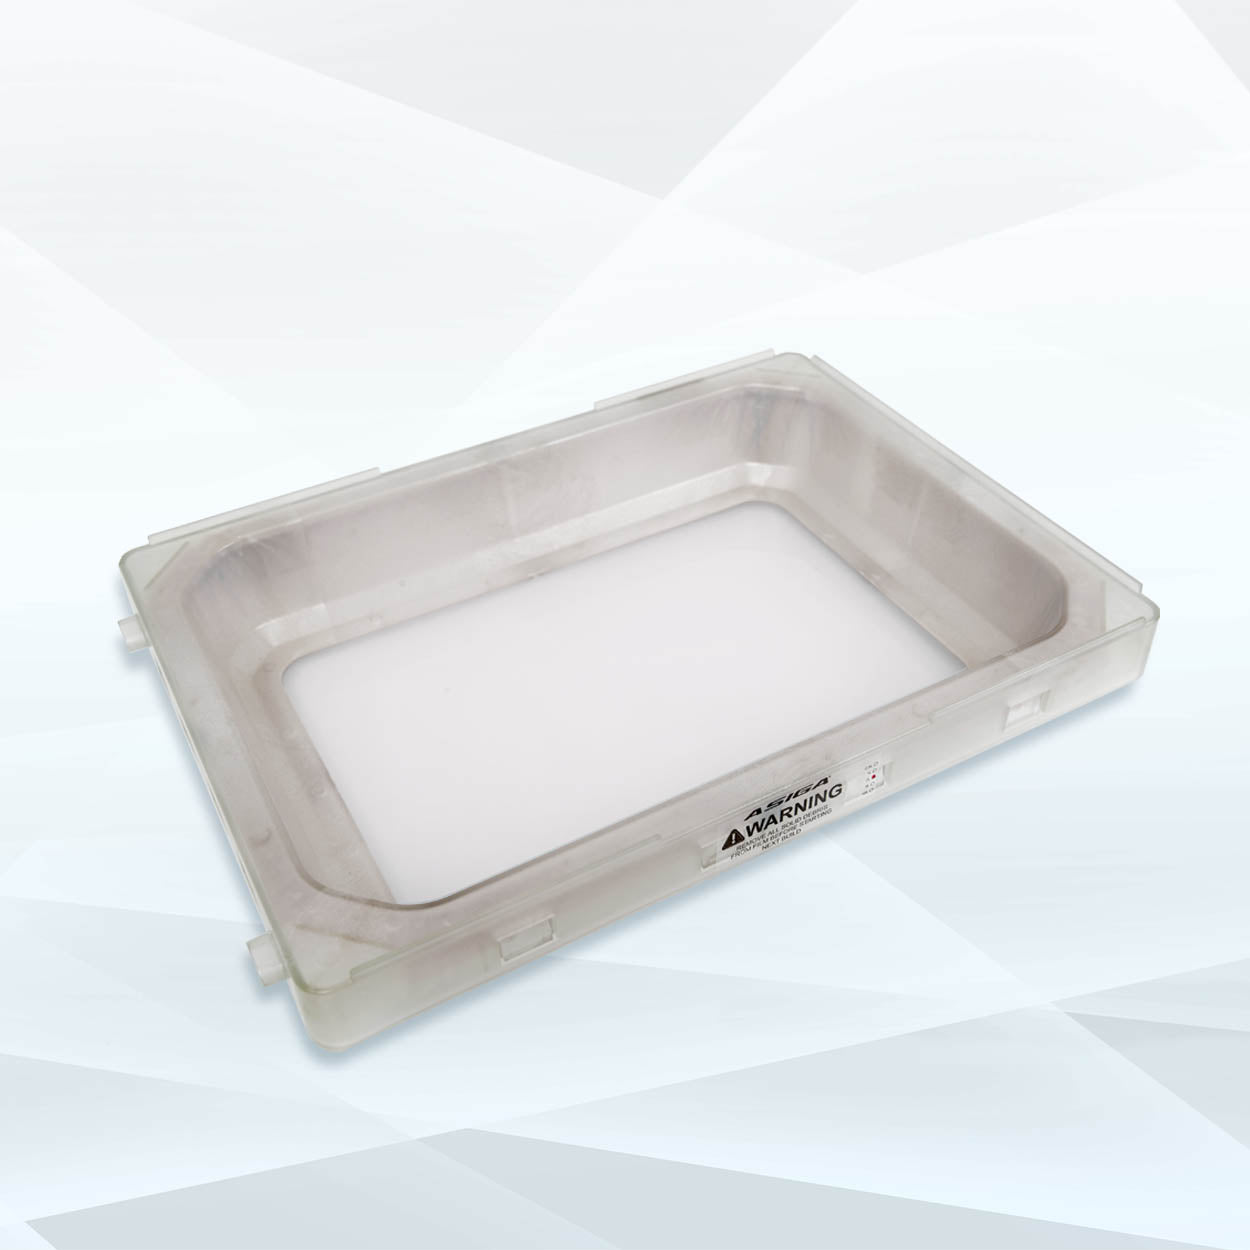 Asiga PRO 4K Build Tray - Dentcore